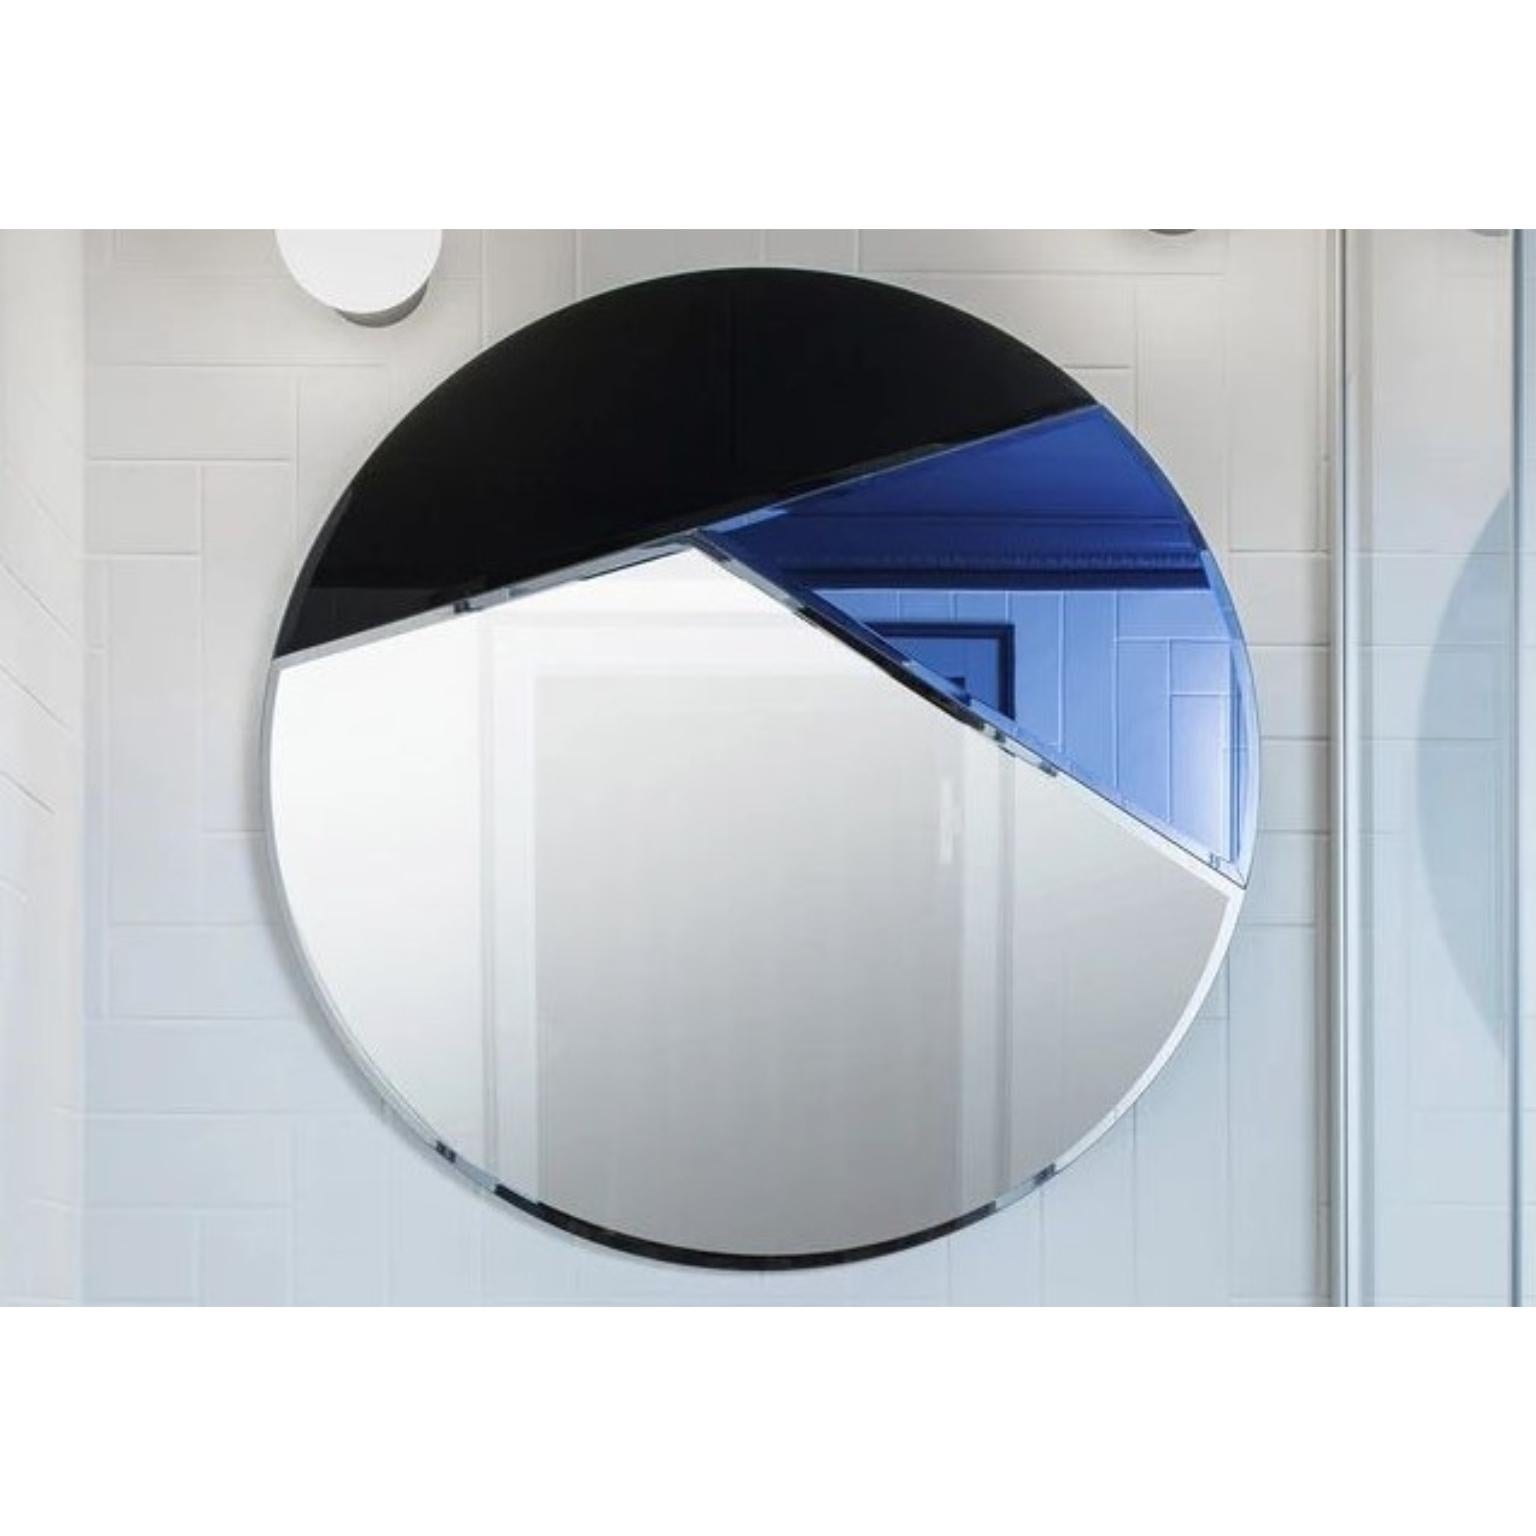 Runder Spiegel Nouveau 80 
Abmessungen: Ø 80 x 1,2 cm
MATERIAL: 4 mm facettierter Spiegel auf schwarz lackiertem MDF
Gewicht: 9 kg


Die runde Spiegelserie Nouveau verbindet Eleganz mit Schlichtheit und zeichnet sich durch ihre geometrischen